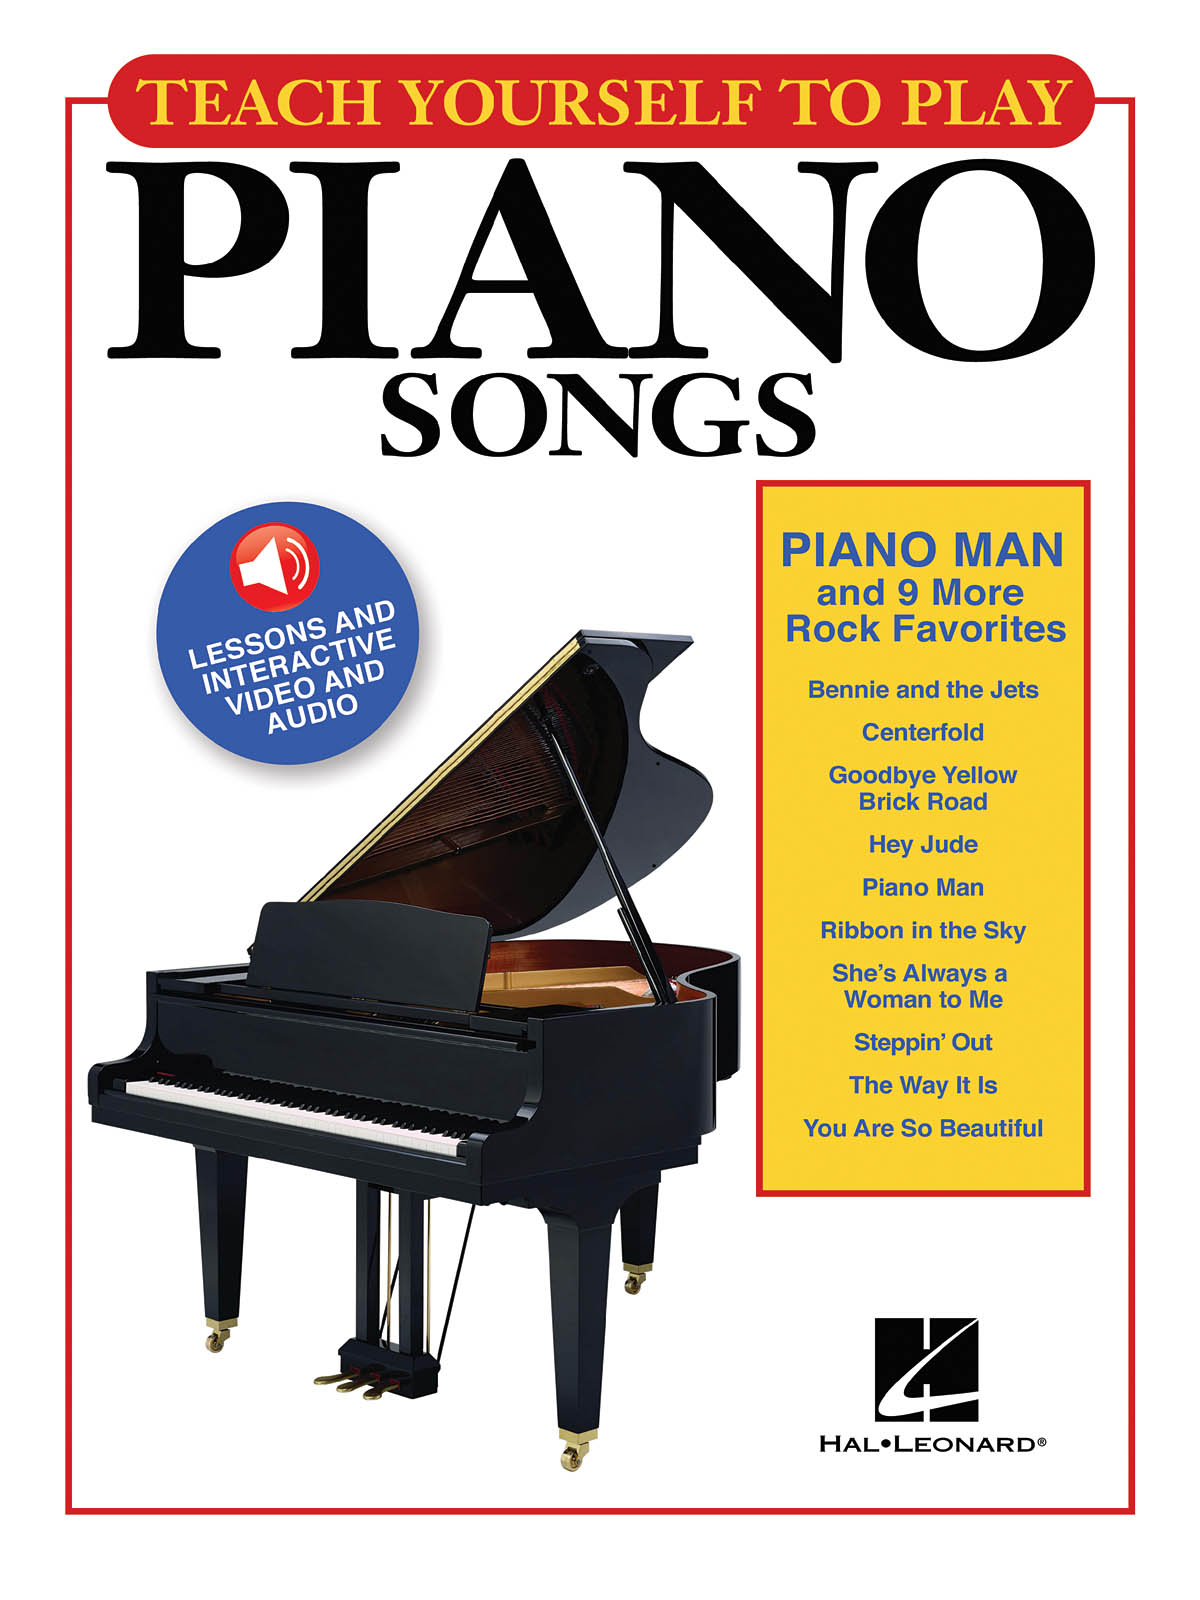 Piano Man And 9 More Rock Favorites - Teach Yourself To Play Piano Songs klavír učebnice